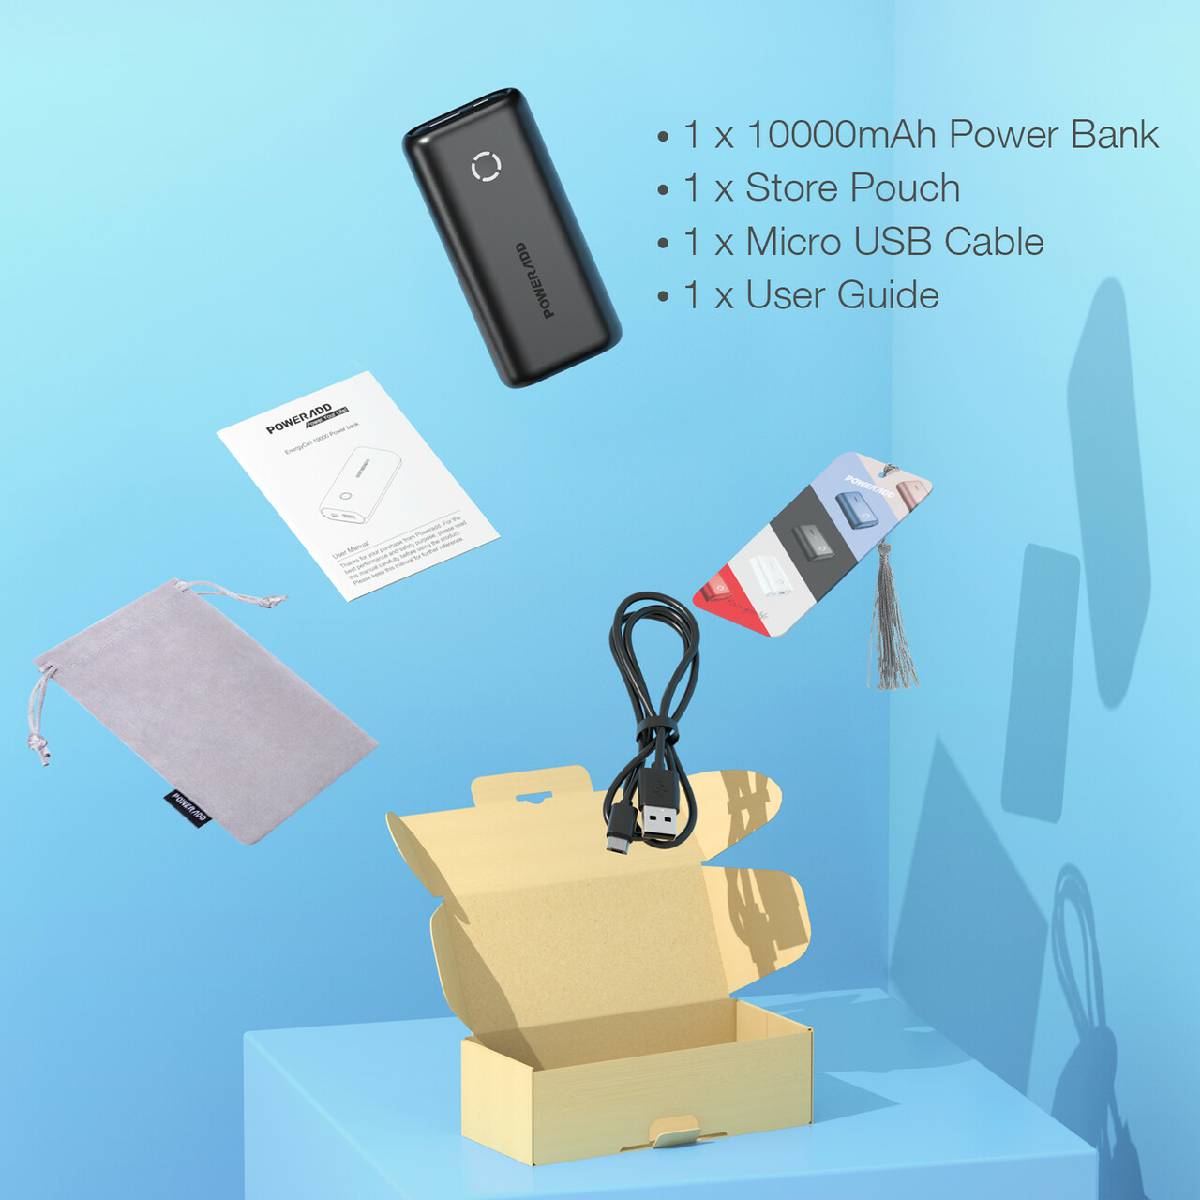  EnergyCell Power Bank 10000mAh, cargador portátil de carga  ultracompacto de alta velocidad, batería externa más pequeña y ligera,  compatible con iPhone 12 11 X Samsung S10, Google, LG, iPad y más